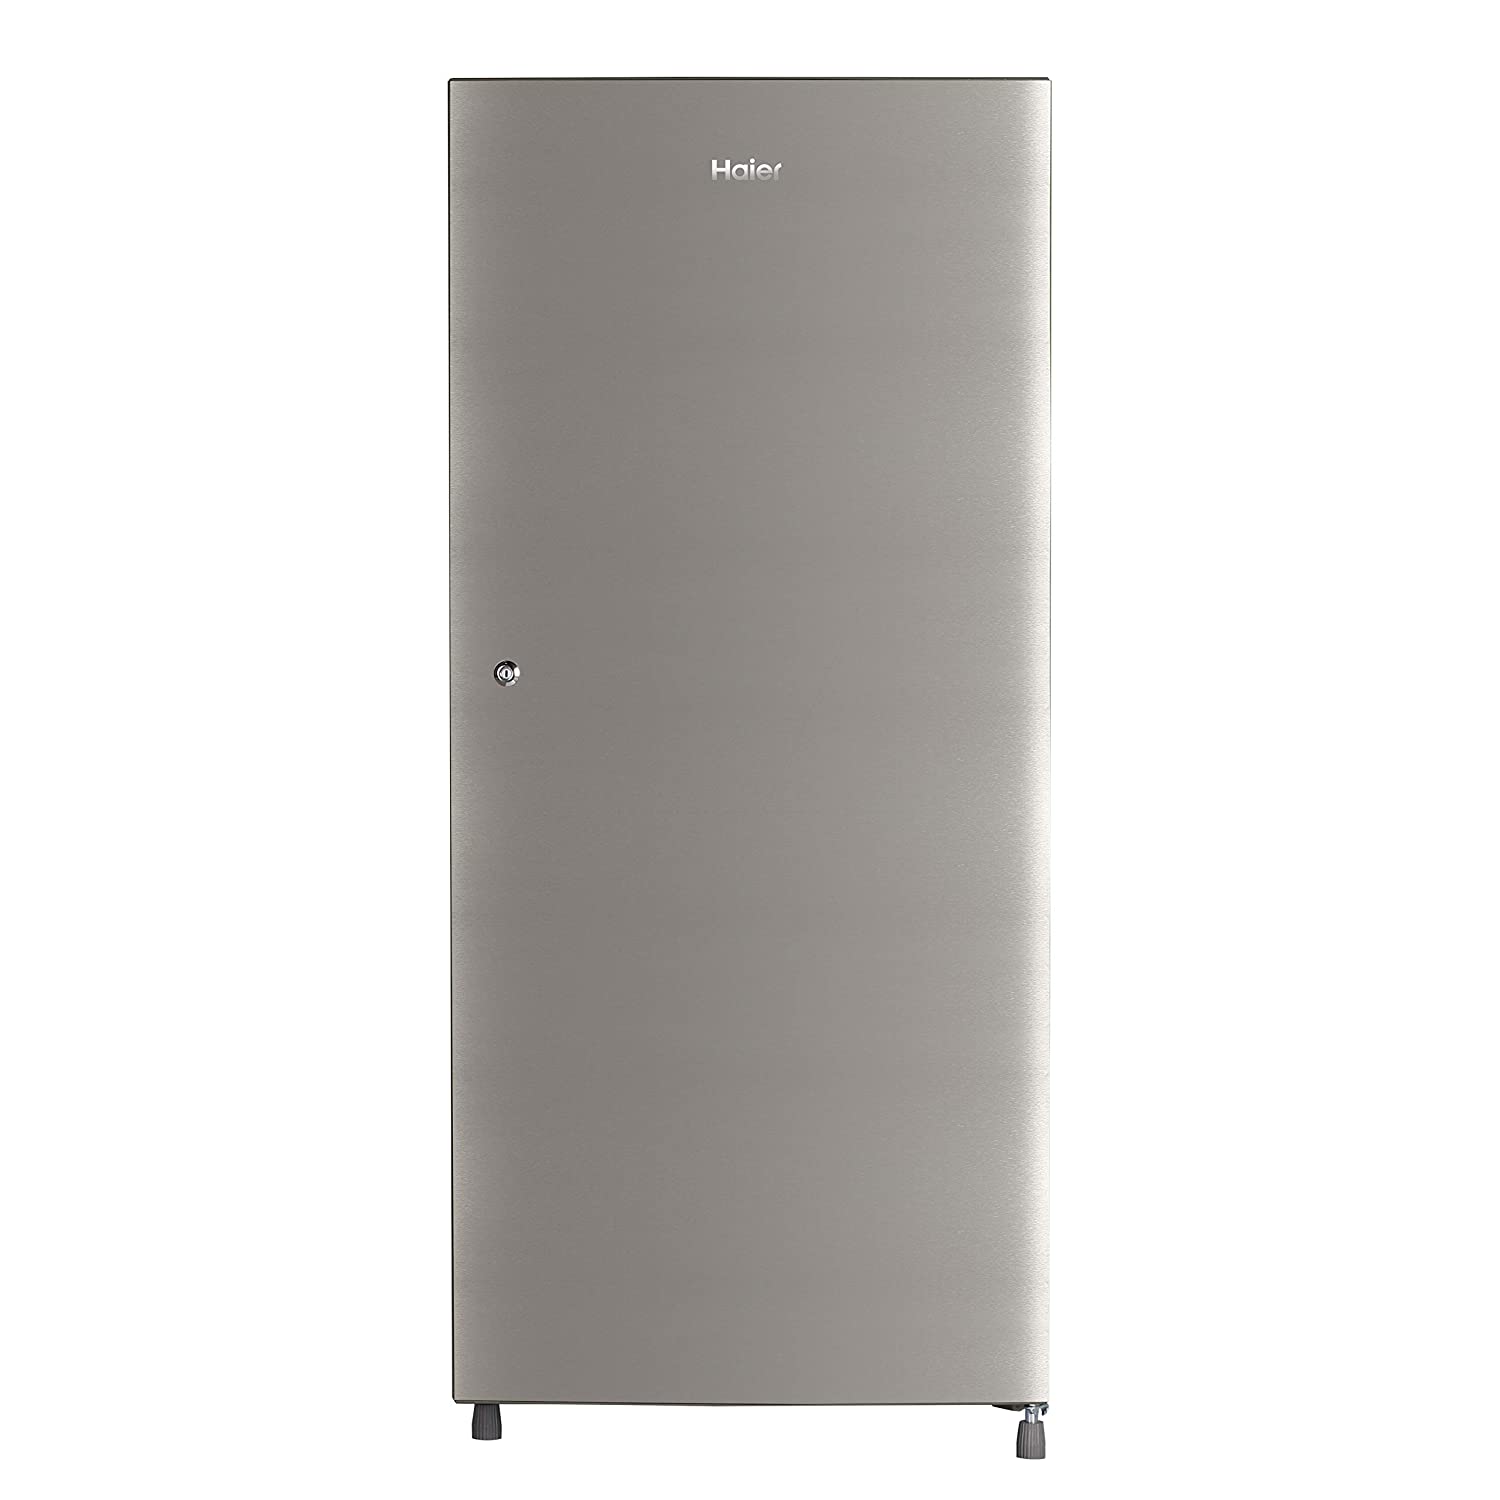 Haier 195 L 5 Star Single Door Refrigerator